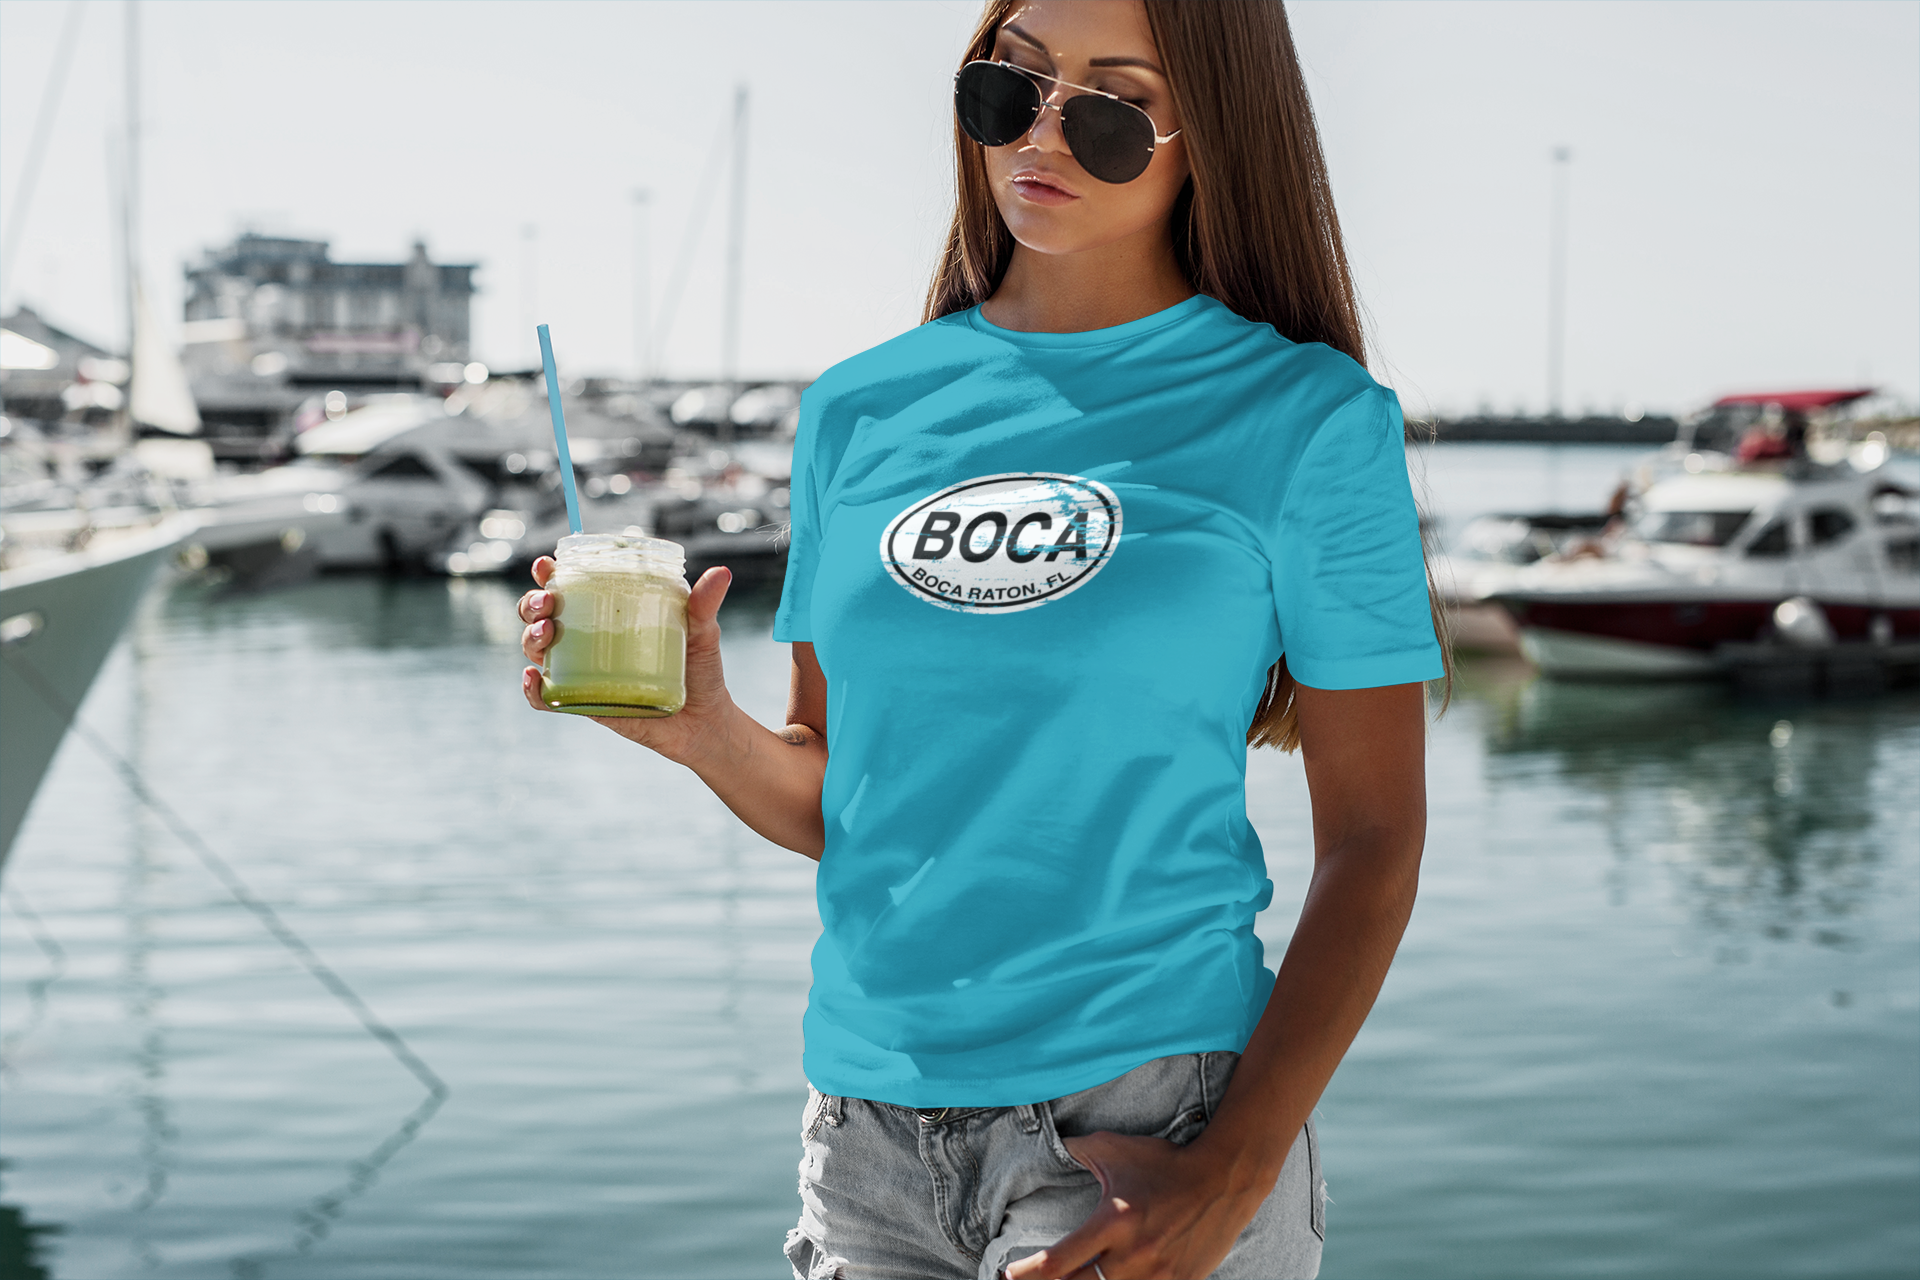 Boca Raton Women's Classic T-Shirt Souvenirs - My Destination Location